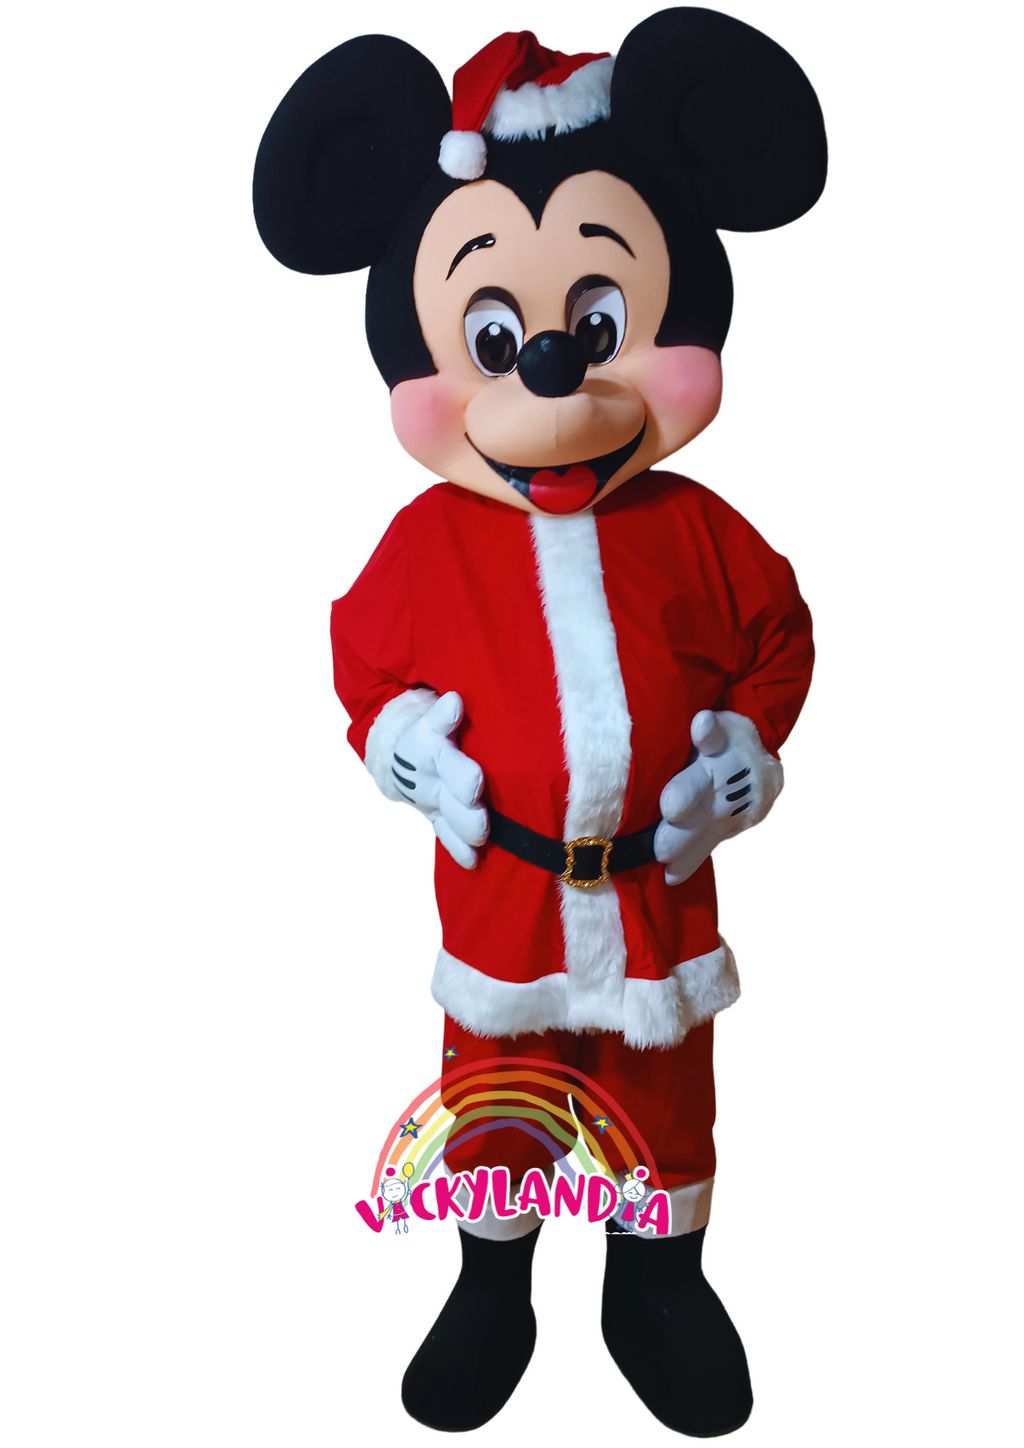 Descubre la magia de nuestro muñeco publicitario de Ratón Navideño en Vickylandia. Son disfraces cabezones perfectos para fiestas infantiles, shows, cumpleaños, estrategias publicitarias, espectáculos, cabalgatas y cualquier tipo de evento.